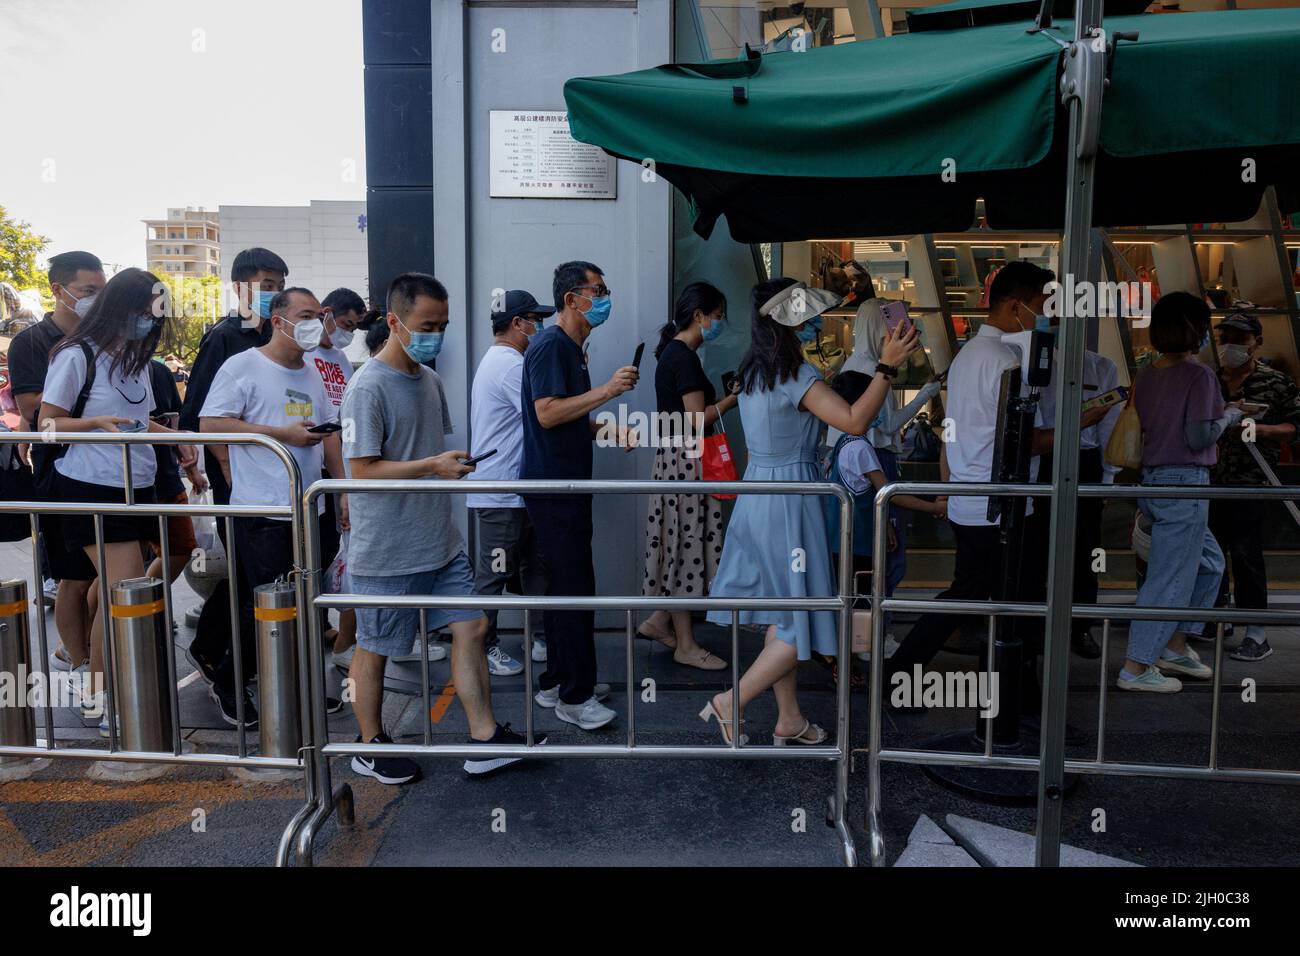 Le persone mostrano il proprio codice sanitario app quando entrano in un'area commerciale prima dell'orario d'ufficio, a seguito di un focolaio di coronavirus (COVID-19), a Pechino, Cina, 14 luglio 2022. REUTERS/Thomas Peter Foto Stock